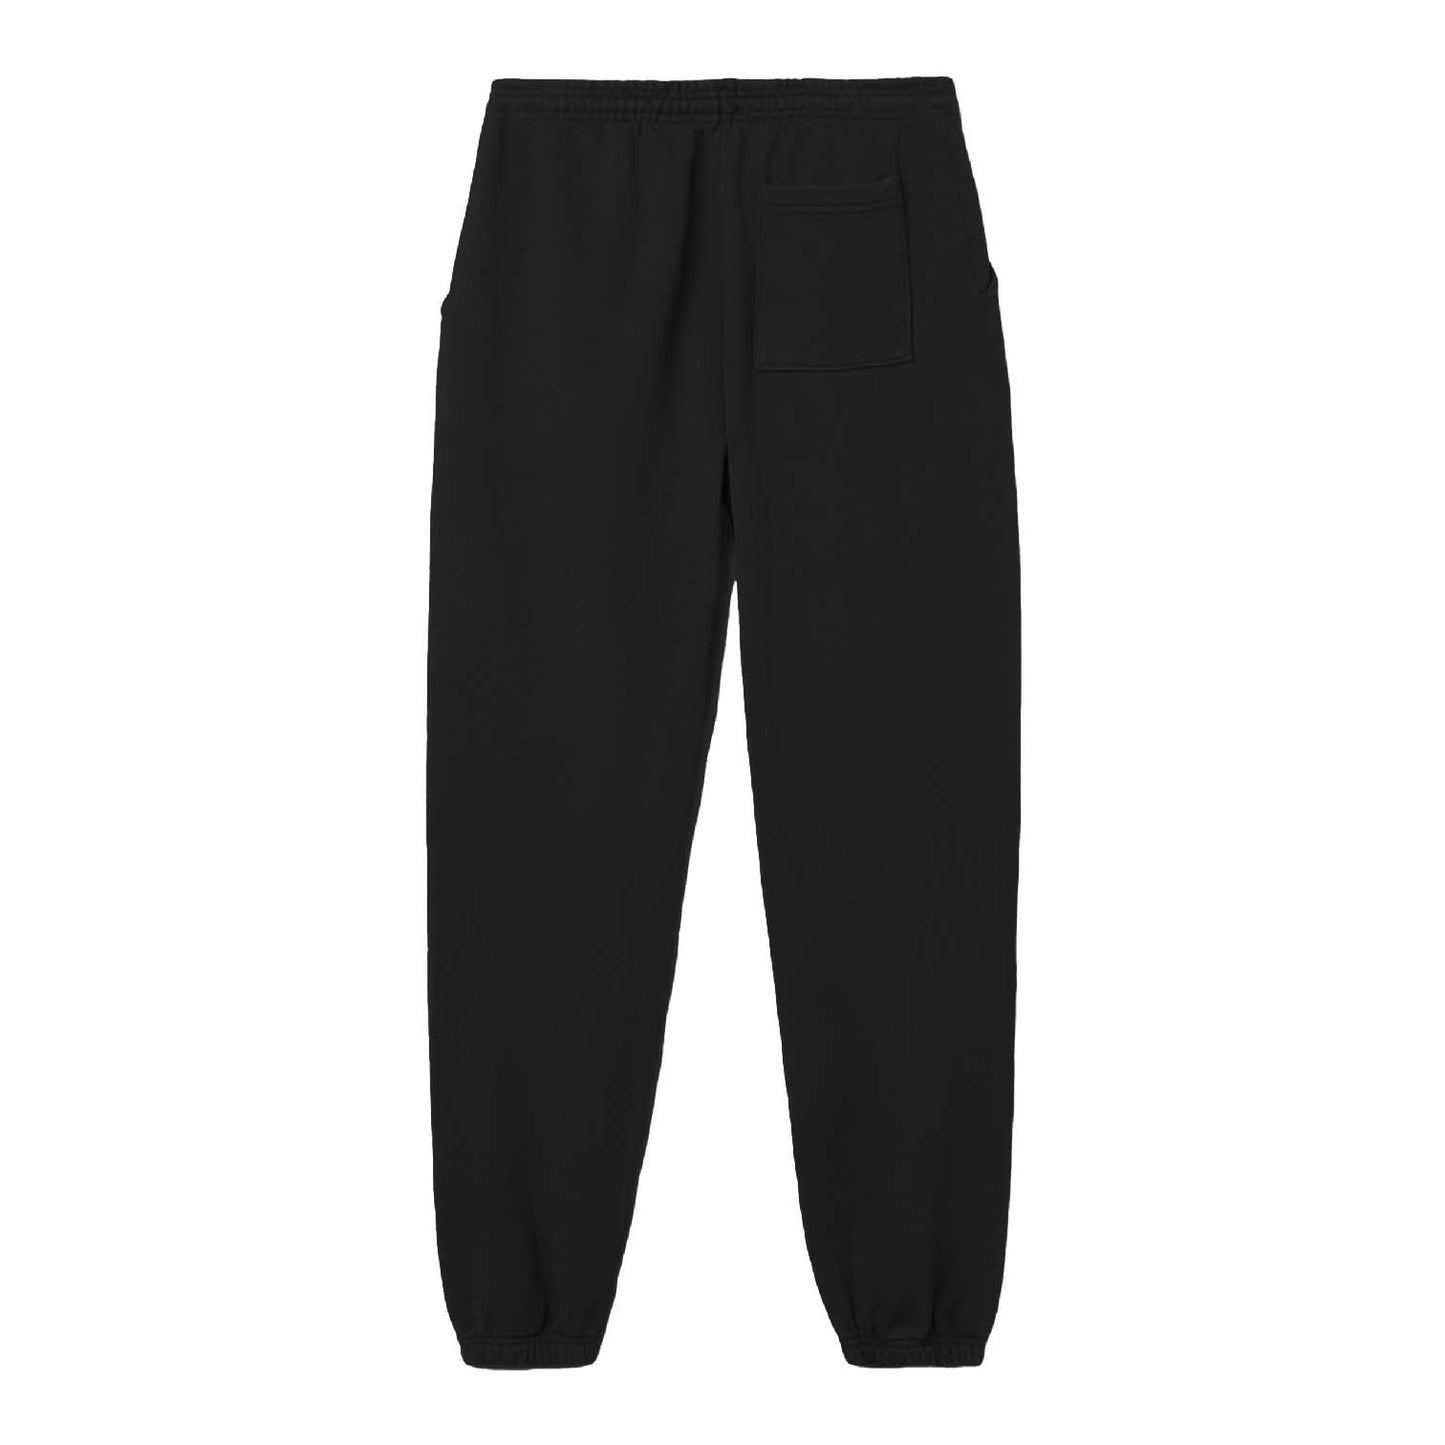 TXDXE Bubble Sweatpants (Black)